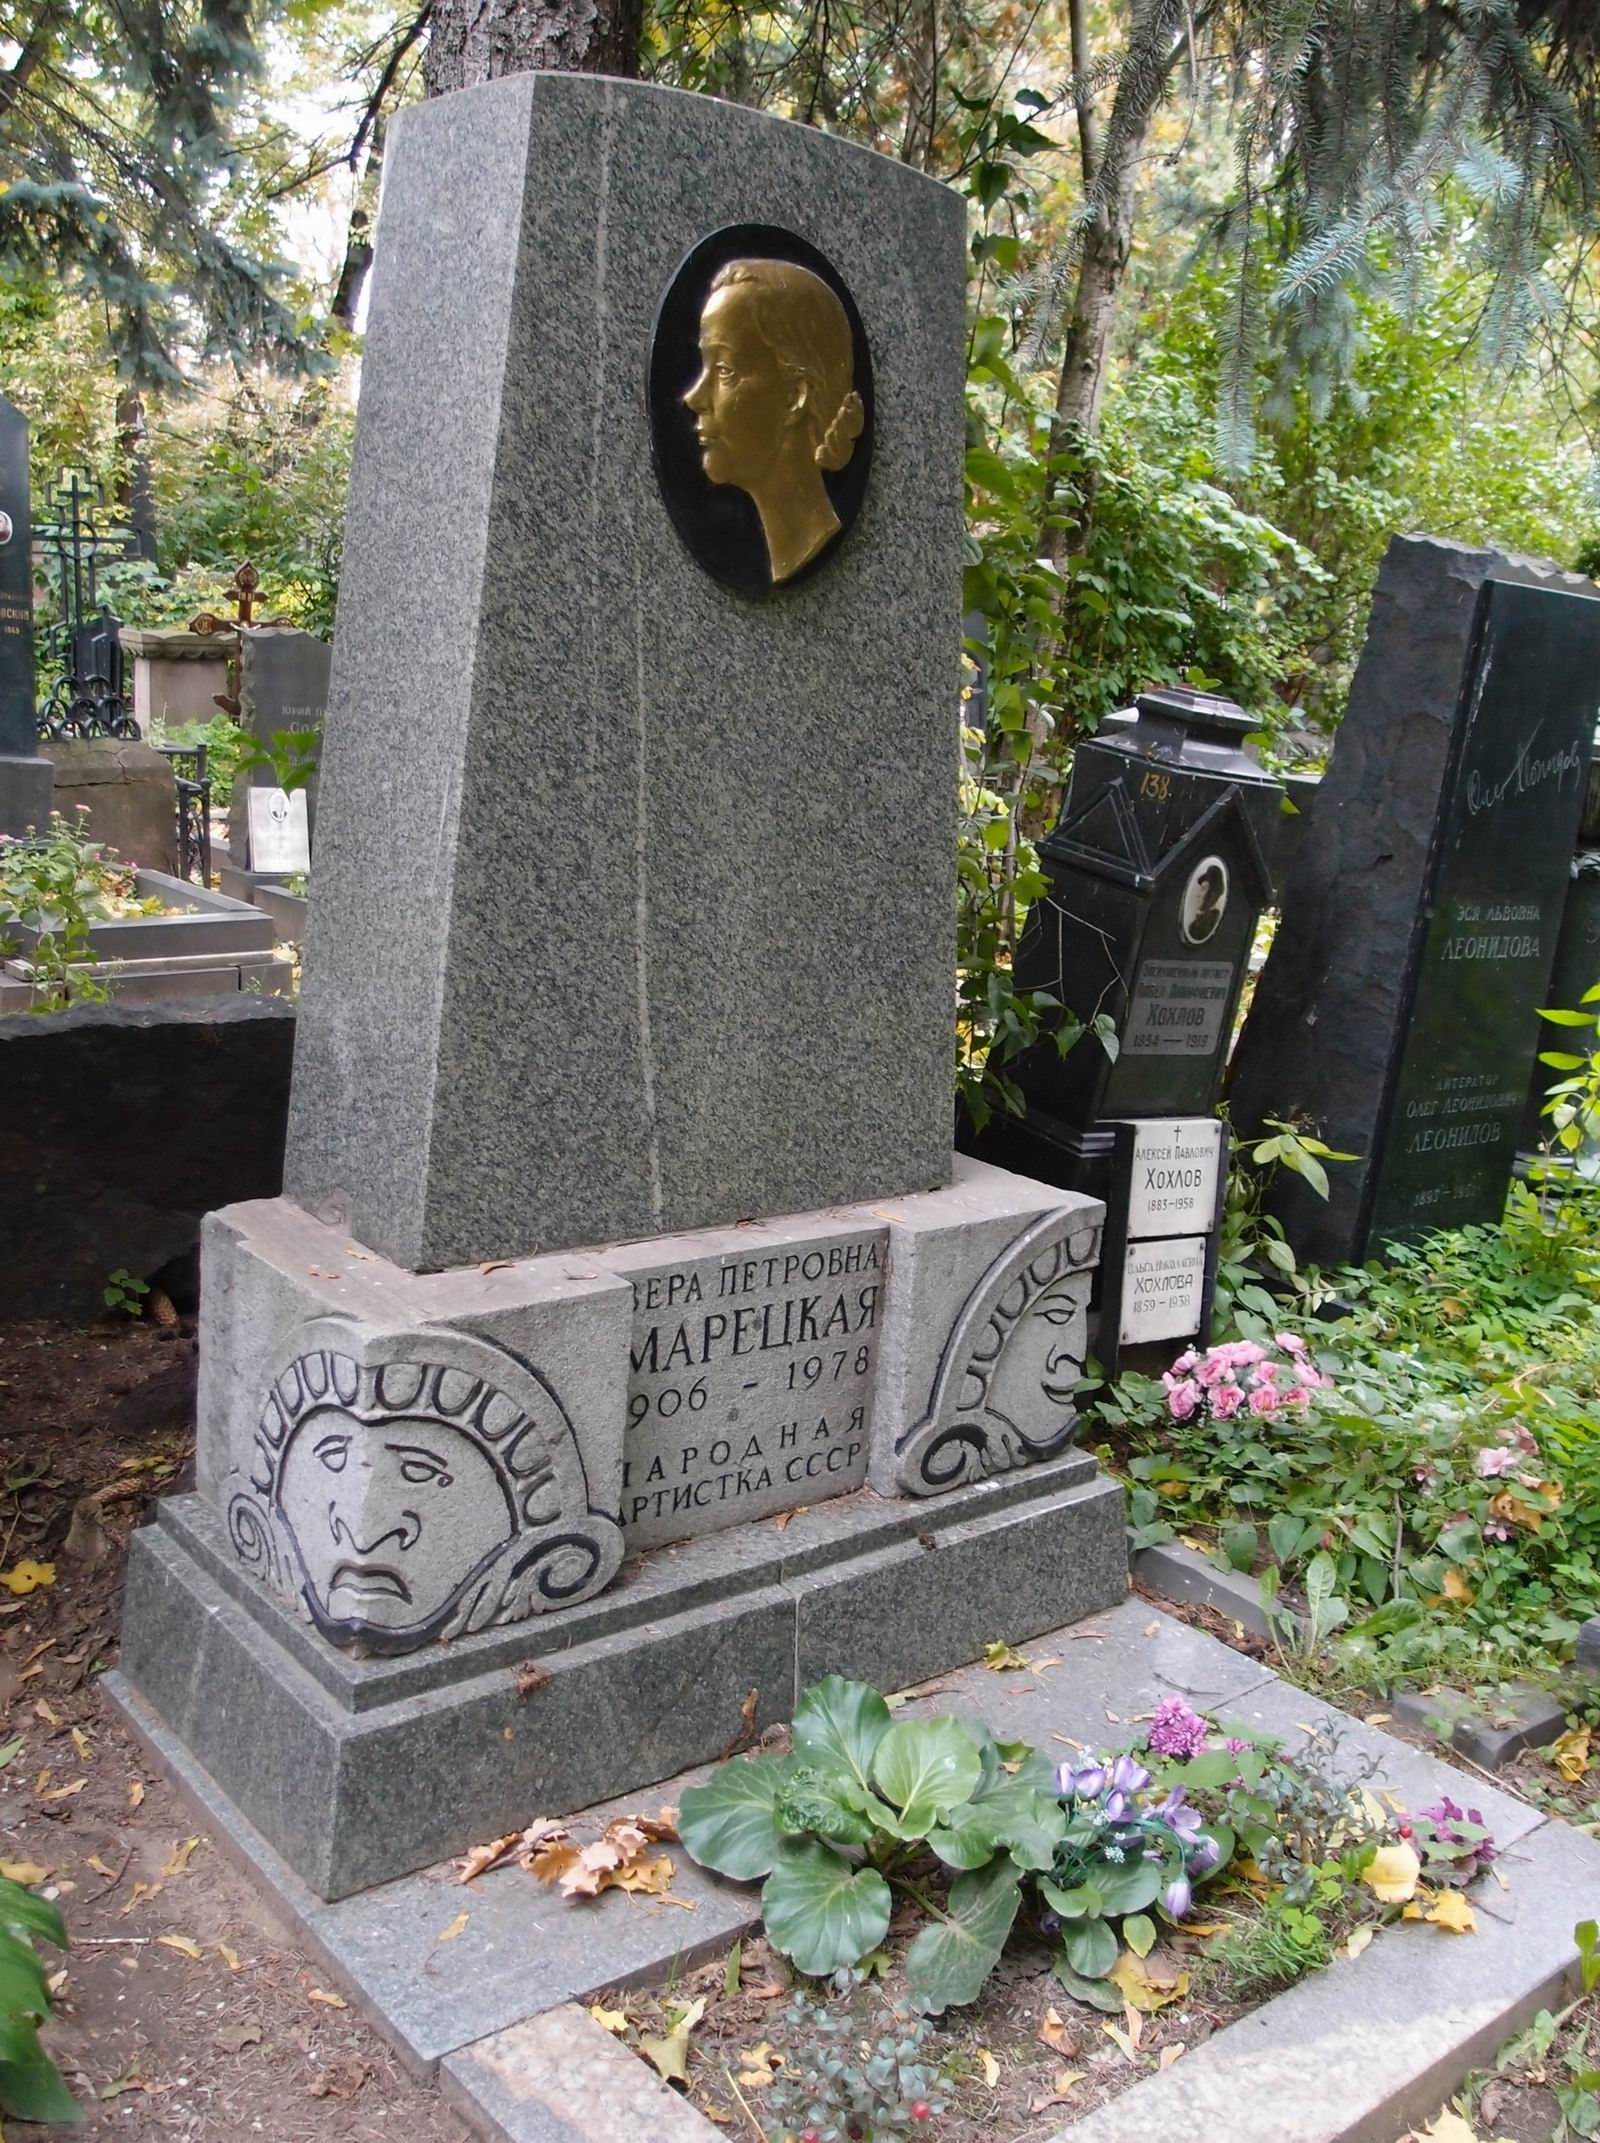 Памятник на могиле Марецкой В.П. (1906–1978), ск. И.Козловский, арх. А.Козловская, В.Либсон, на Новодевичьем кладбище (2–11–11). Нажмите левую кнопку мыши, чтобы увидеть предыдущий вариант.